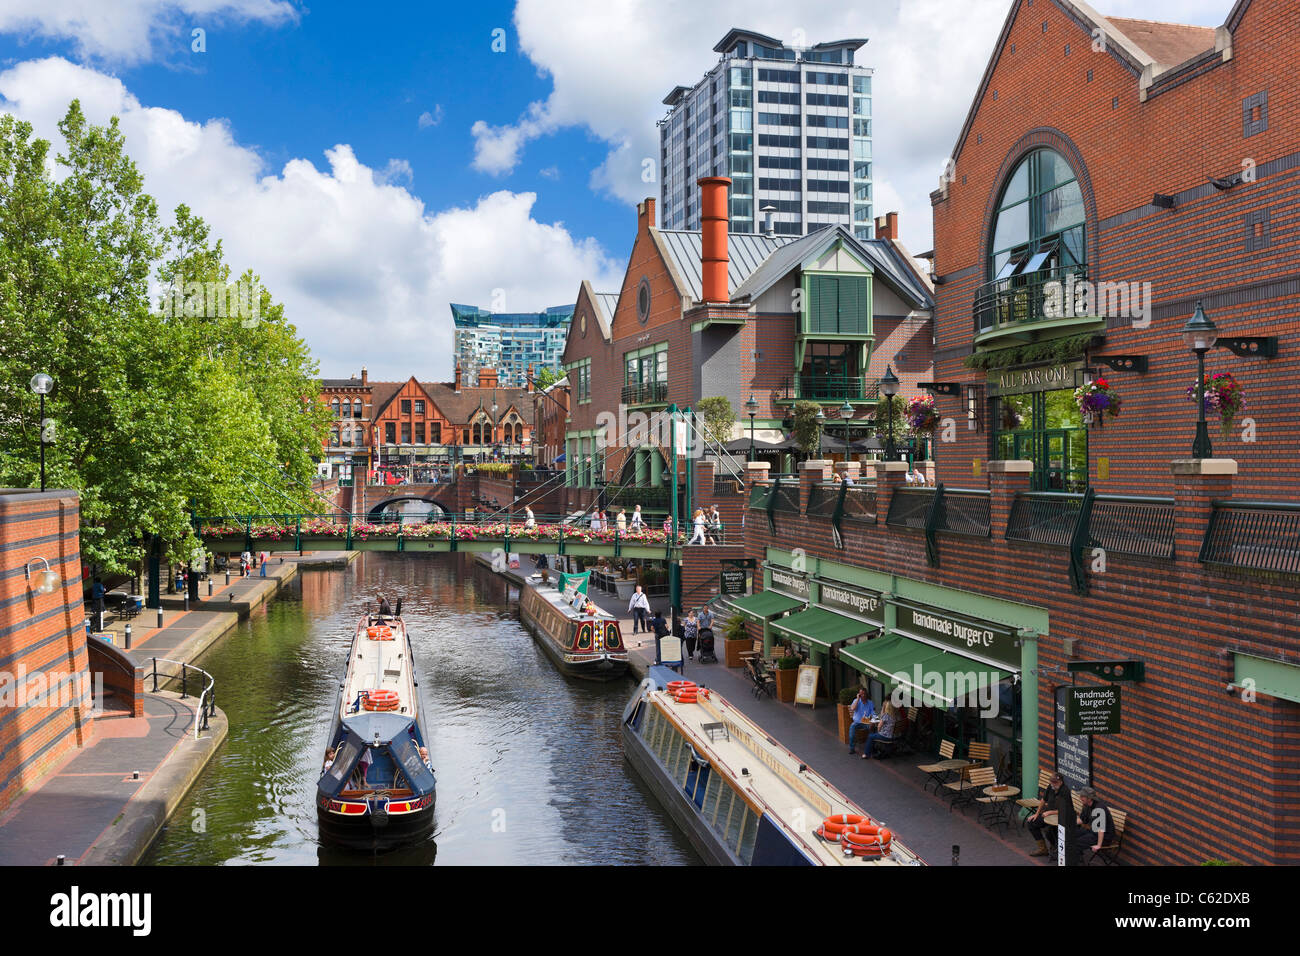 Narrowboats devant les restaurants sur le canal à Brindley place, Birmingham, Royaume-Uni Banque D'Images